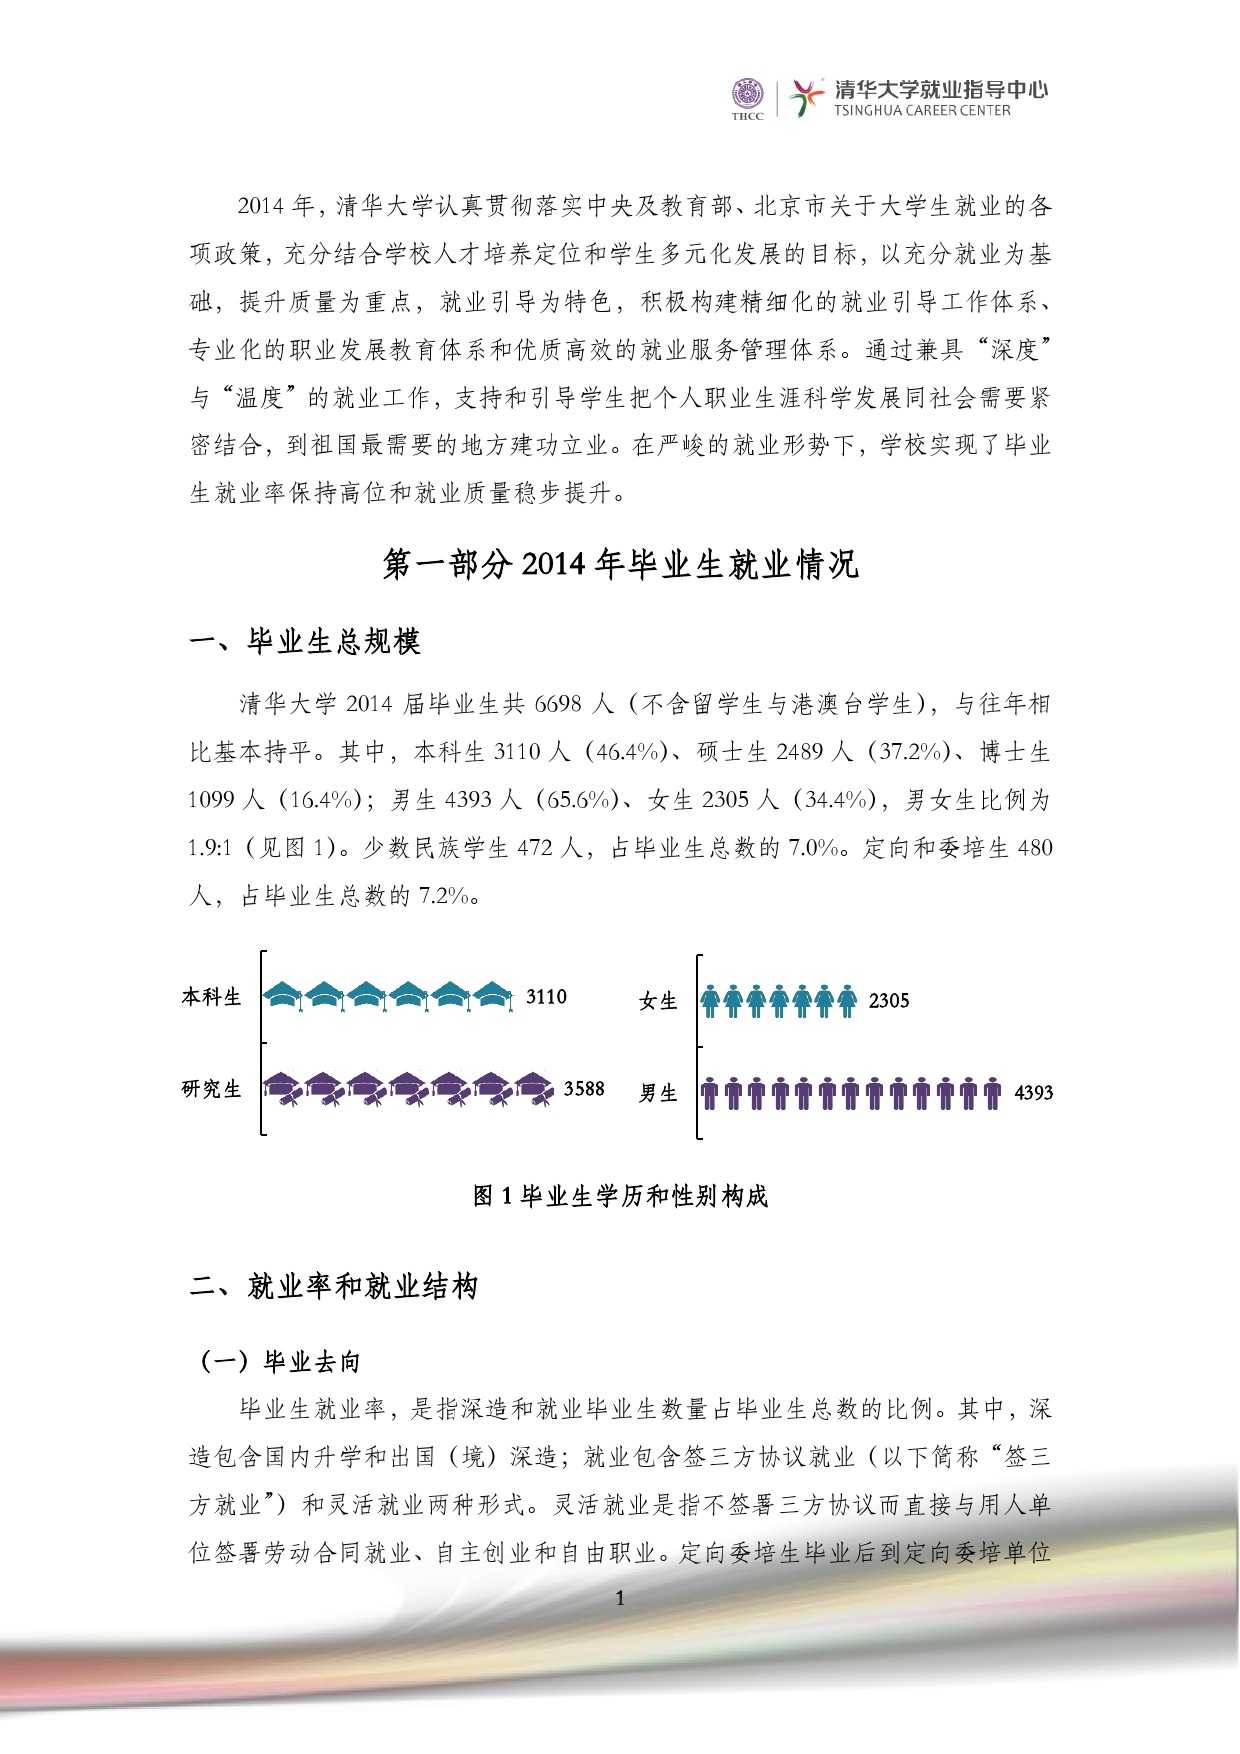 清華大學2014 年畢業生就業質量報告_000003